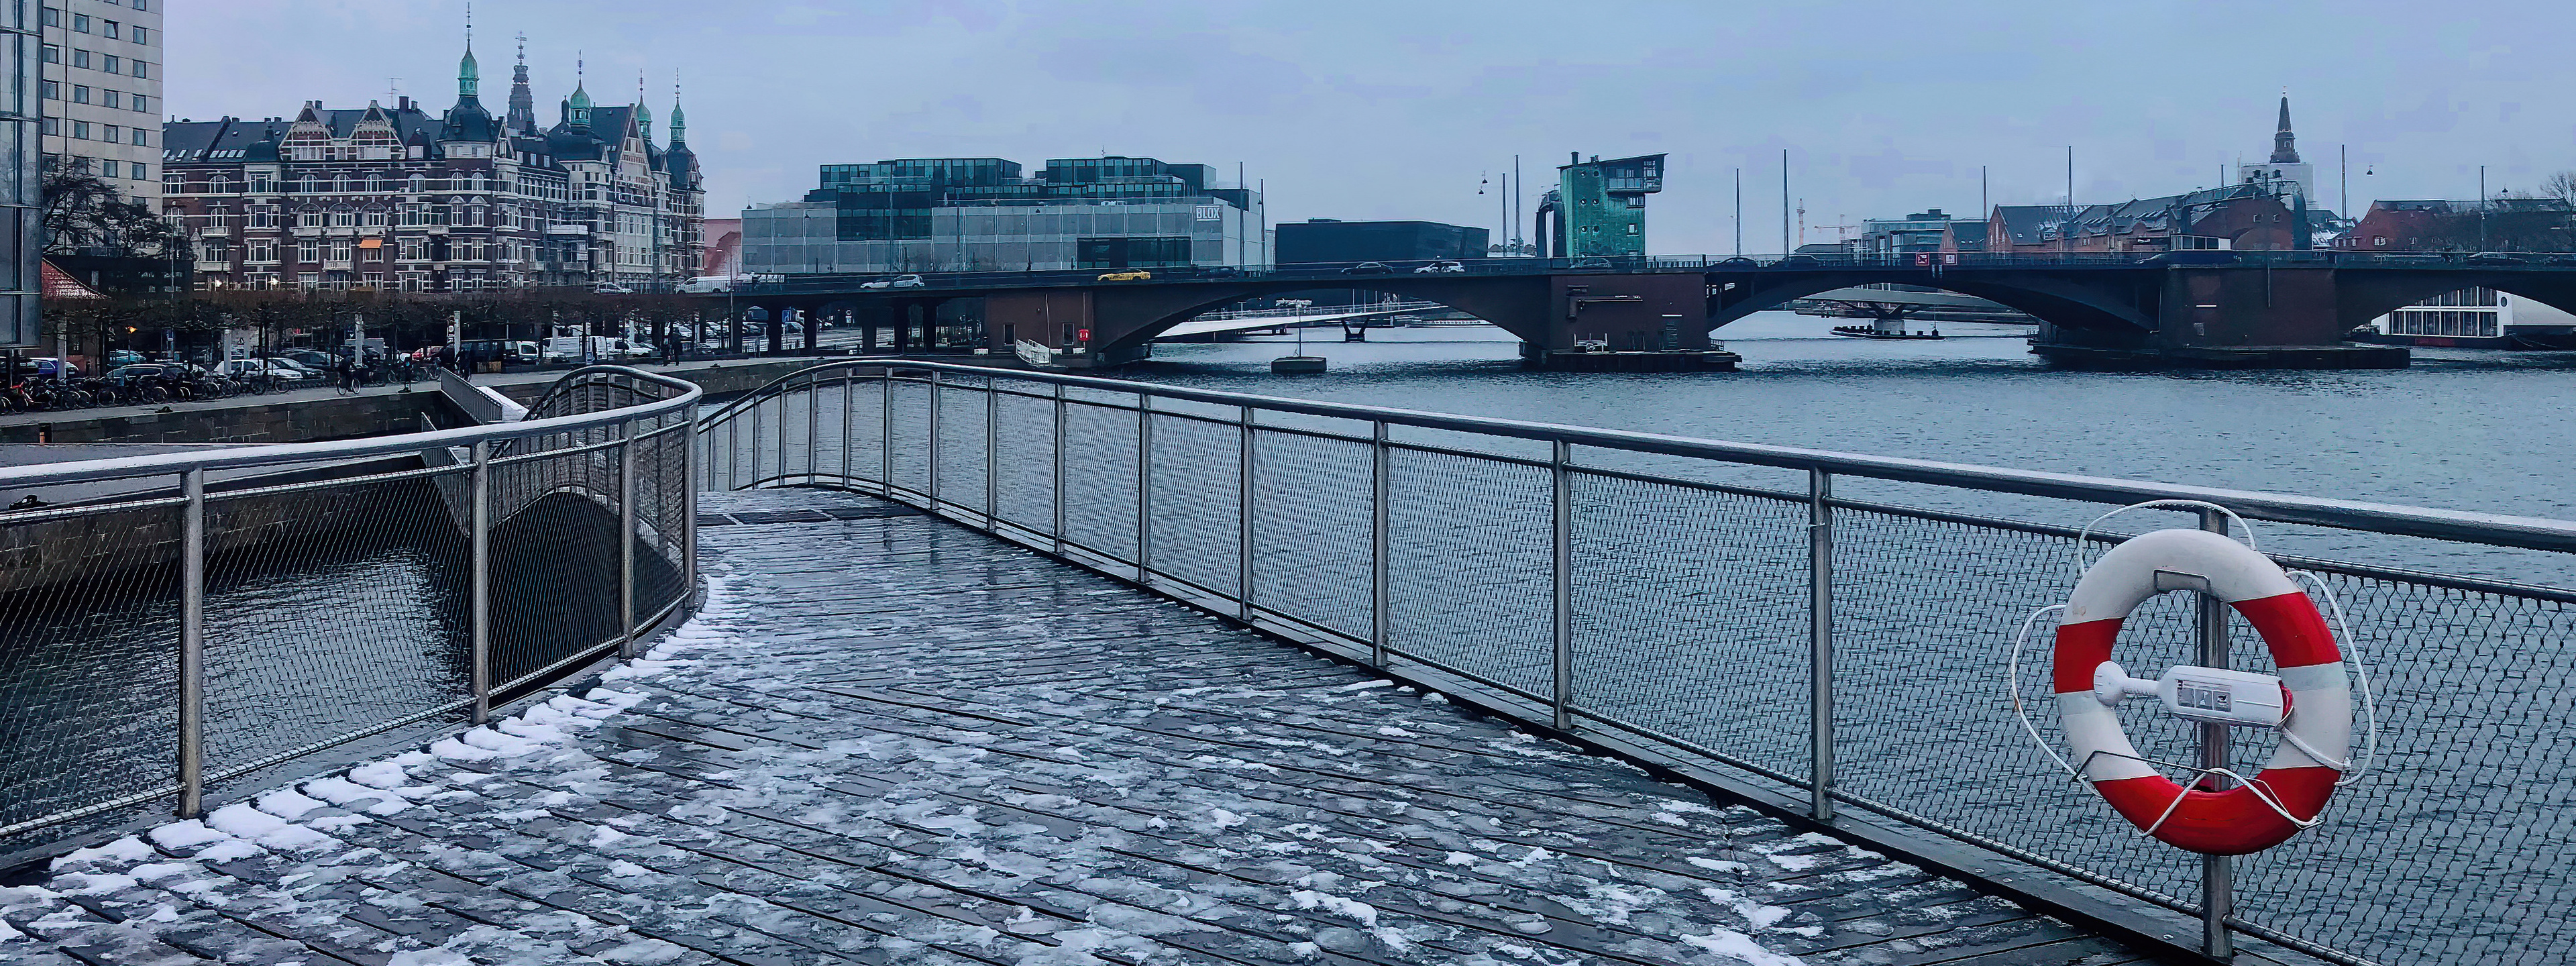 Copenhagen by winter time